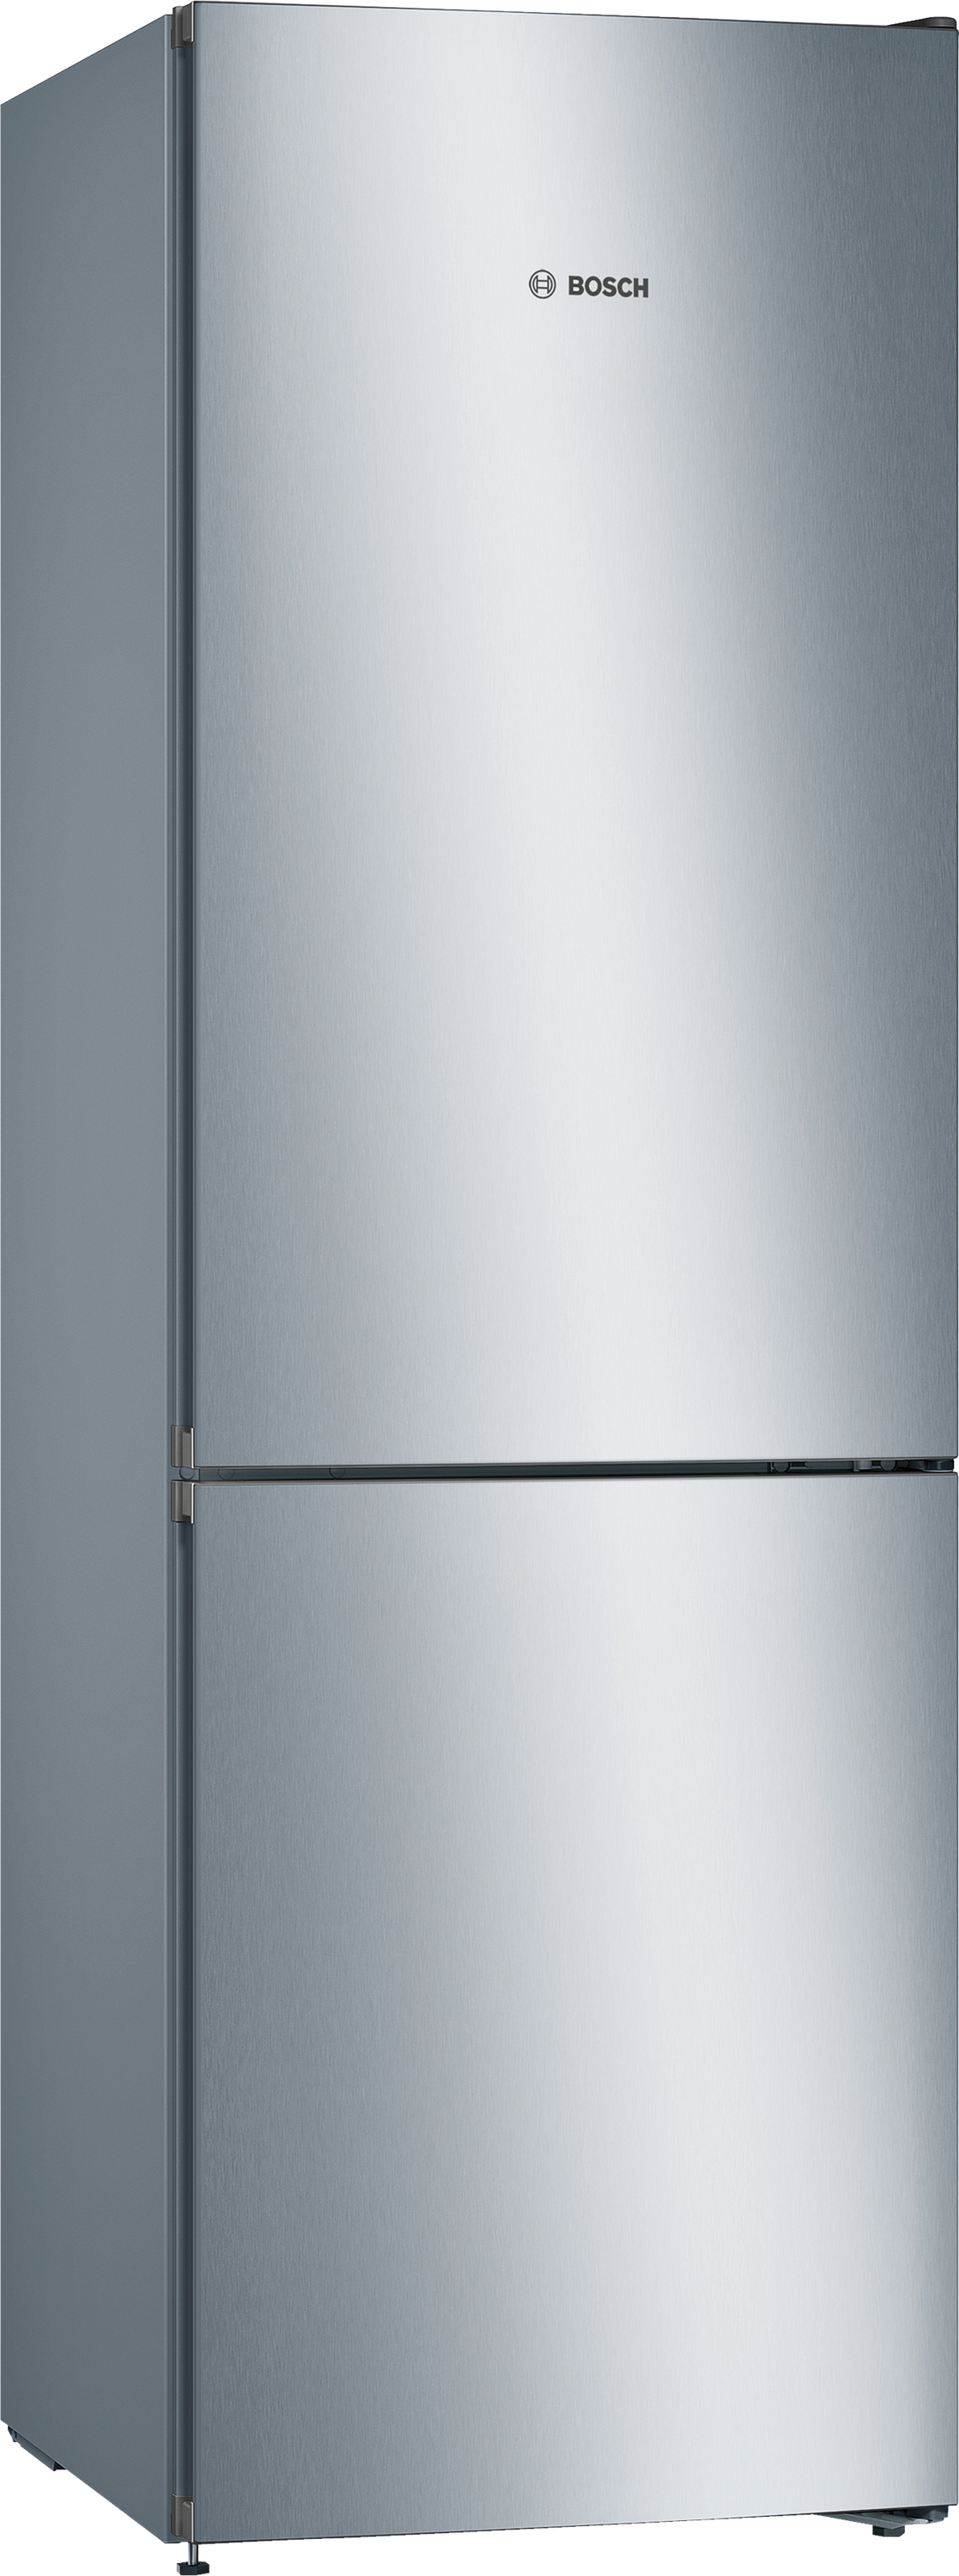 KGN36VLEC, Samostojeći frižider sa zamrzivačem dole